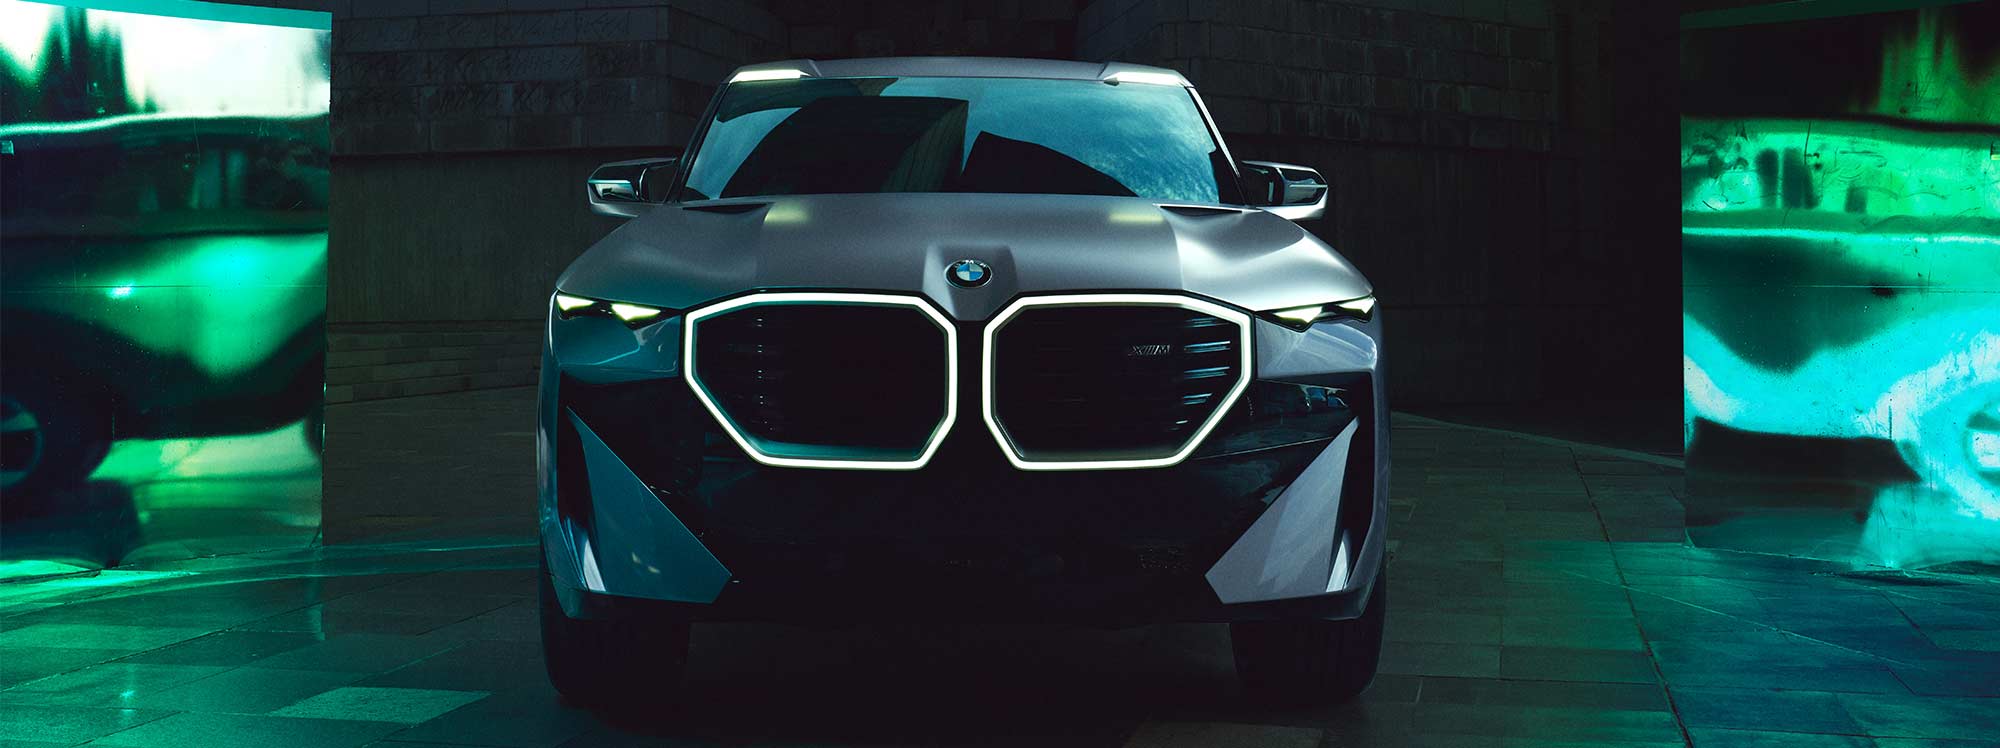 BMW Concept XM: mayor potencia y lujo